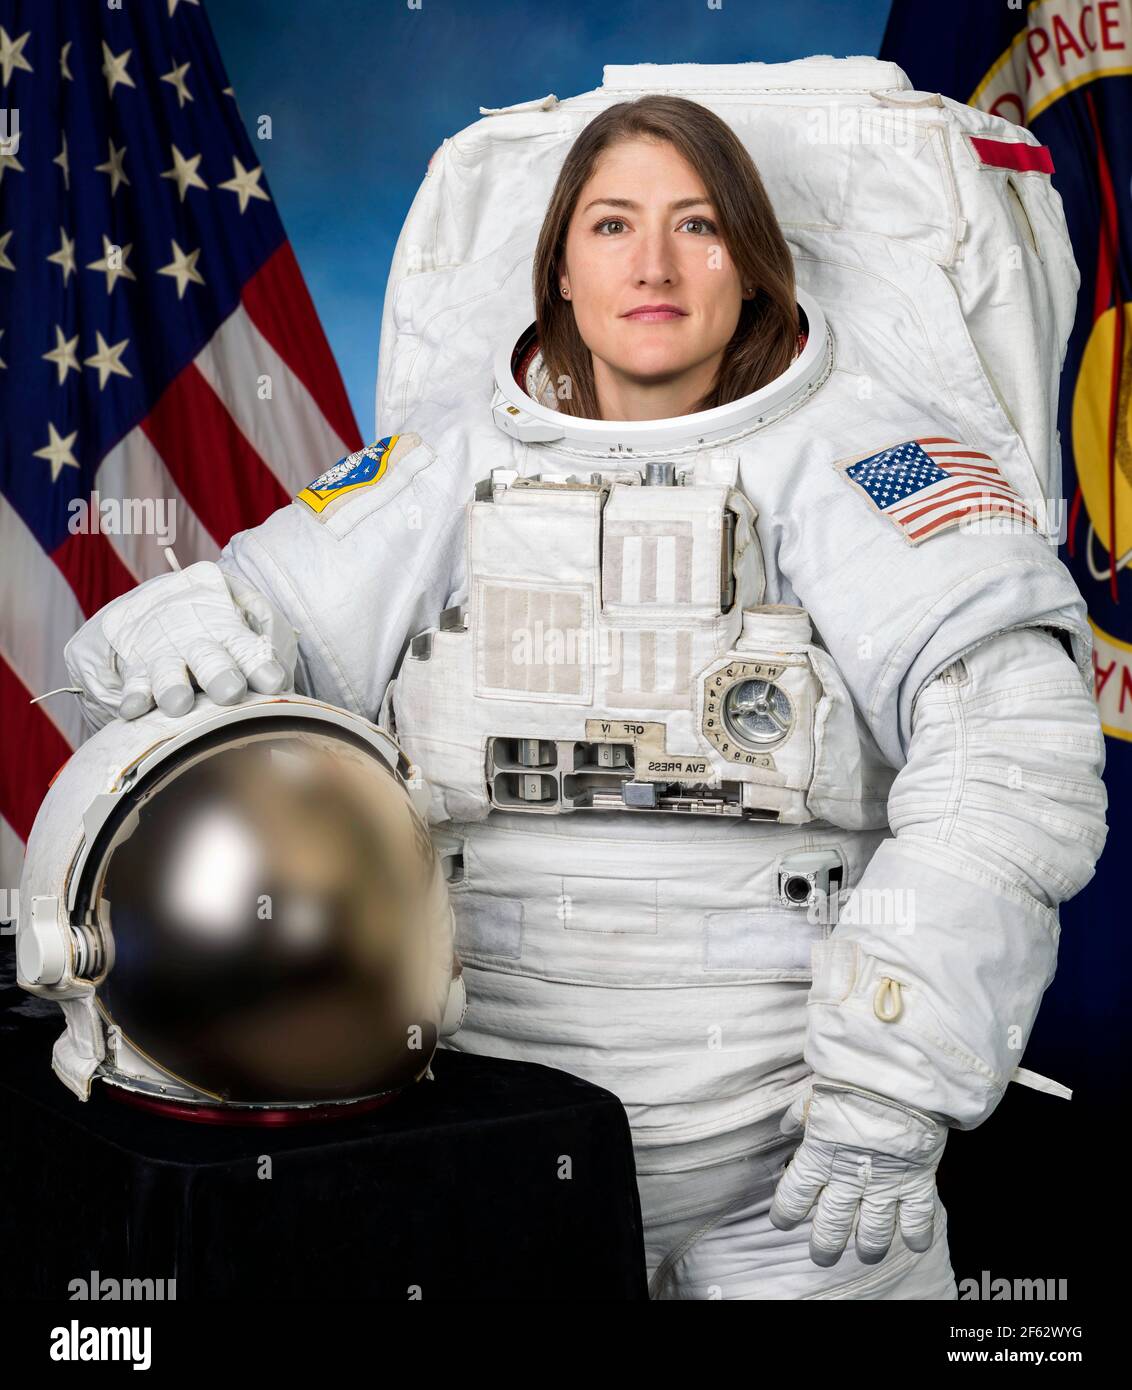 Christina Koch. Porträt der NASA-Astronautin Christina Hammock Koch (geb. 1979) Tragen eines Extravehicular Mobility Unit (EMU)-Anzugs. Foto mit freundlicher Genehmigung der NASA, 2018 Stockfoto